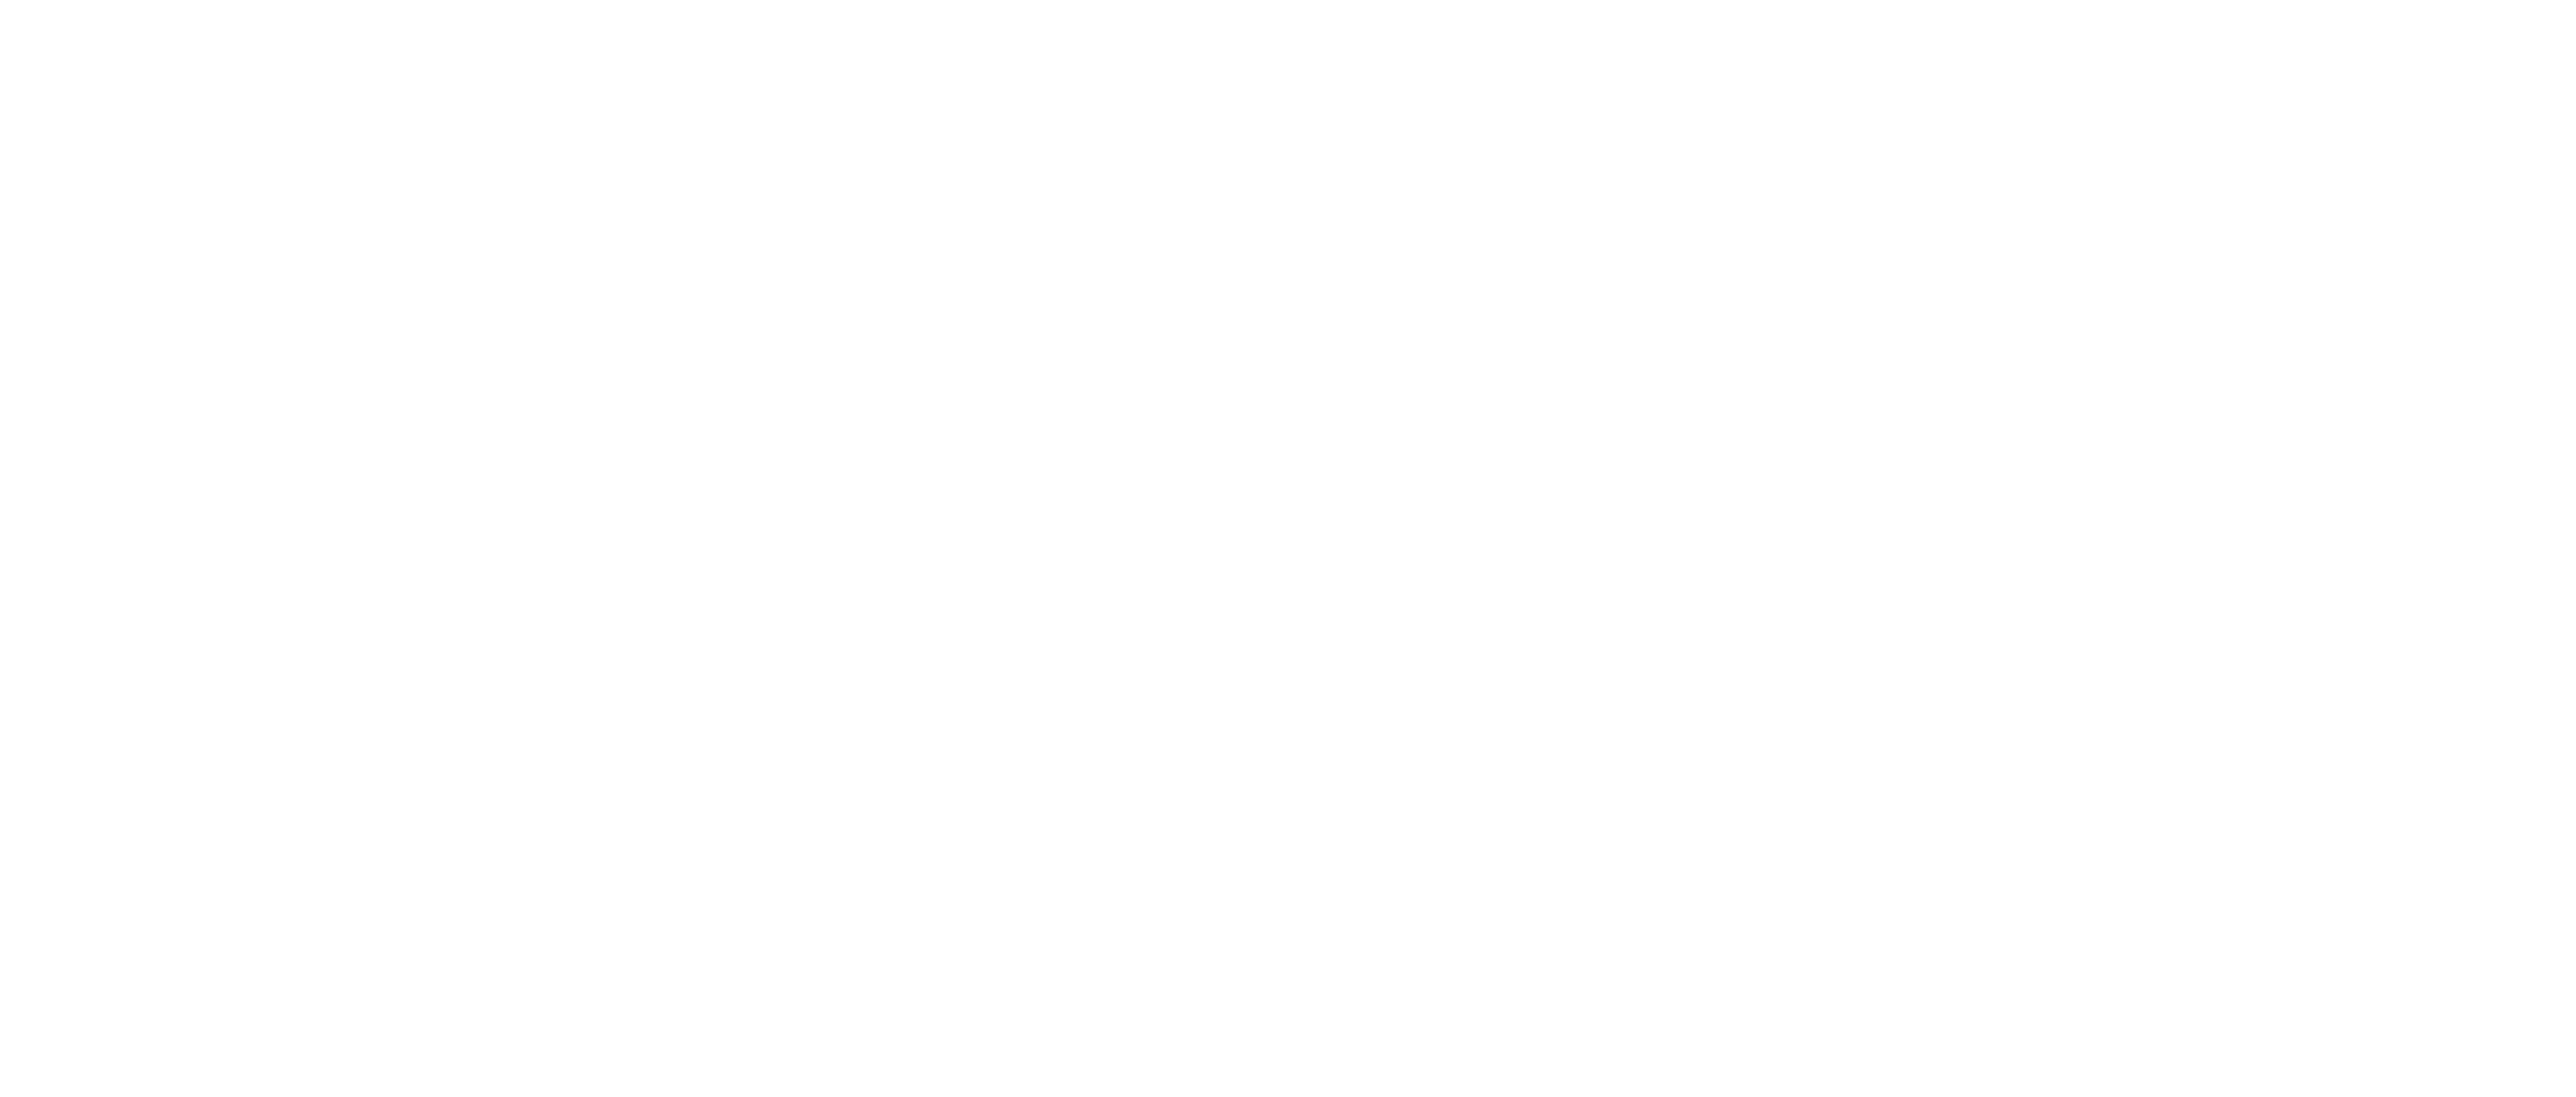 The Dorr logo